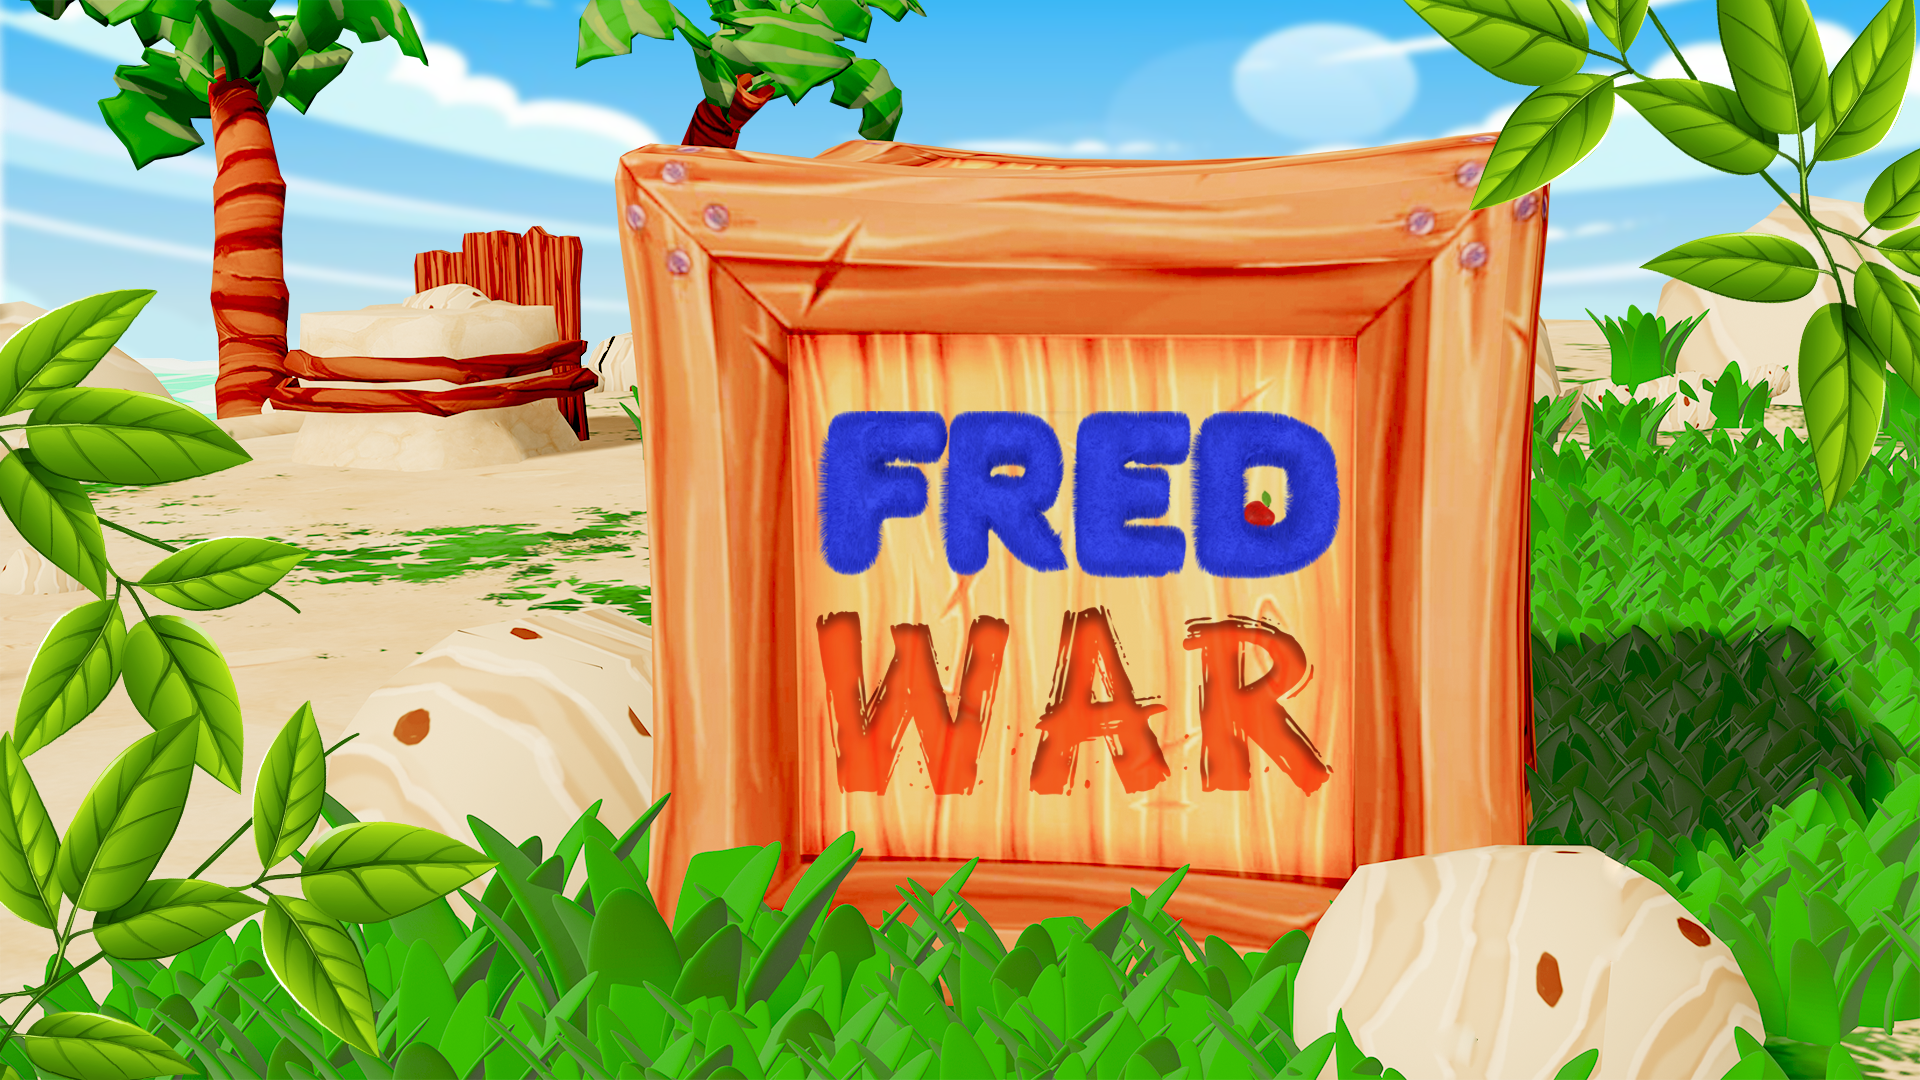 Fred War